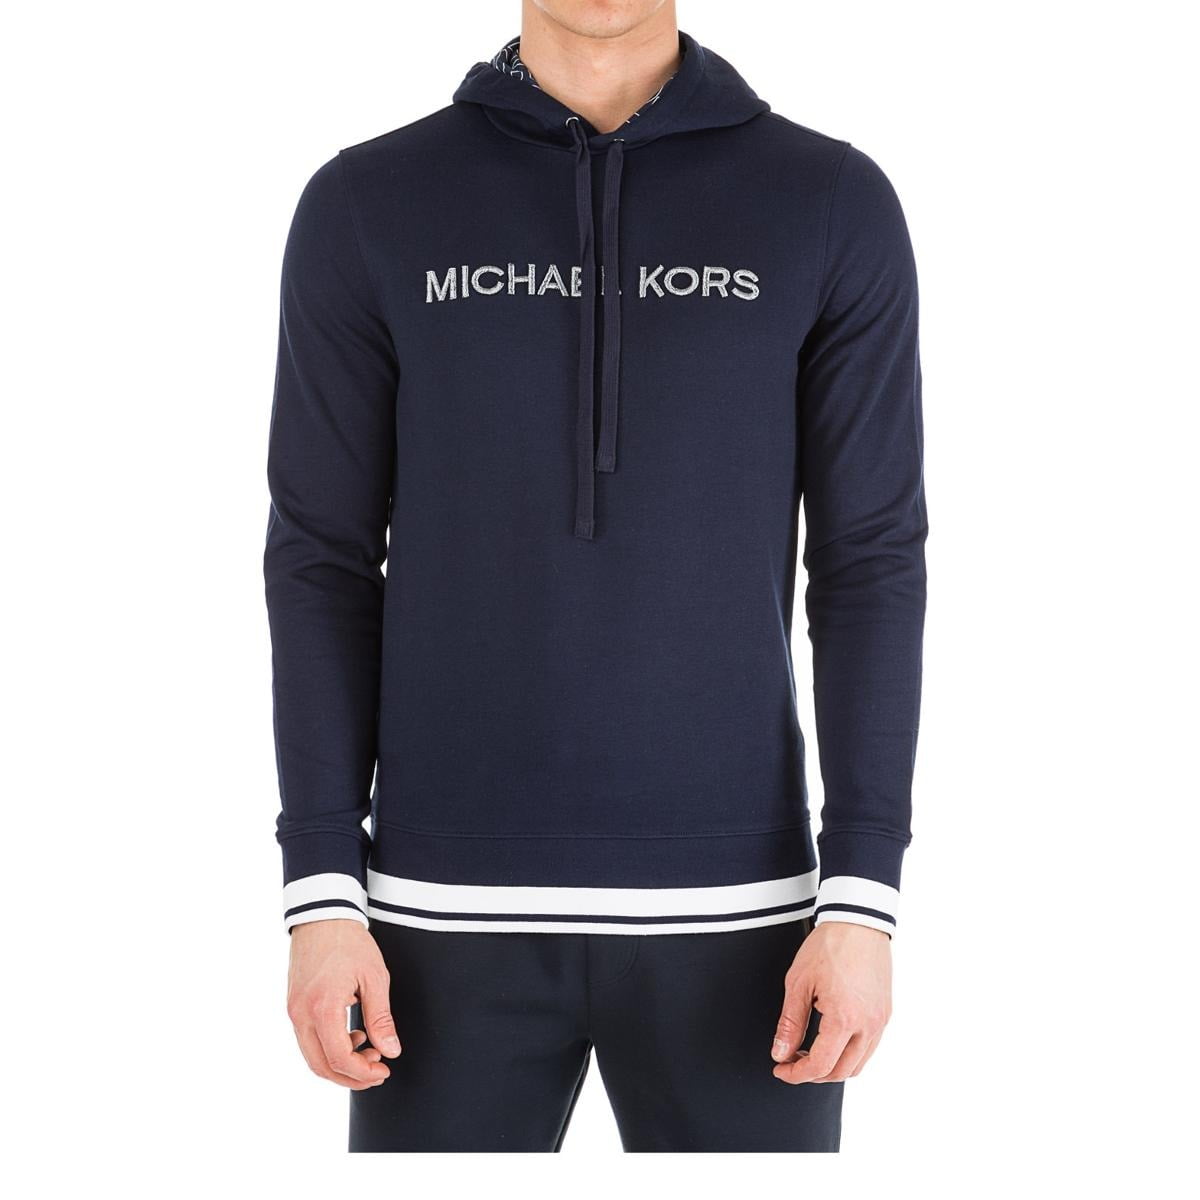 Michael Kors Hoodies & Sweatshirts - Mens Hoodie Navy Embroidered Logo ...